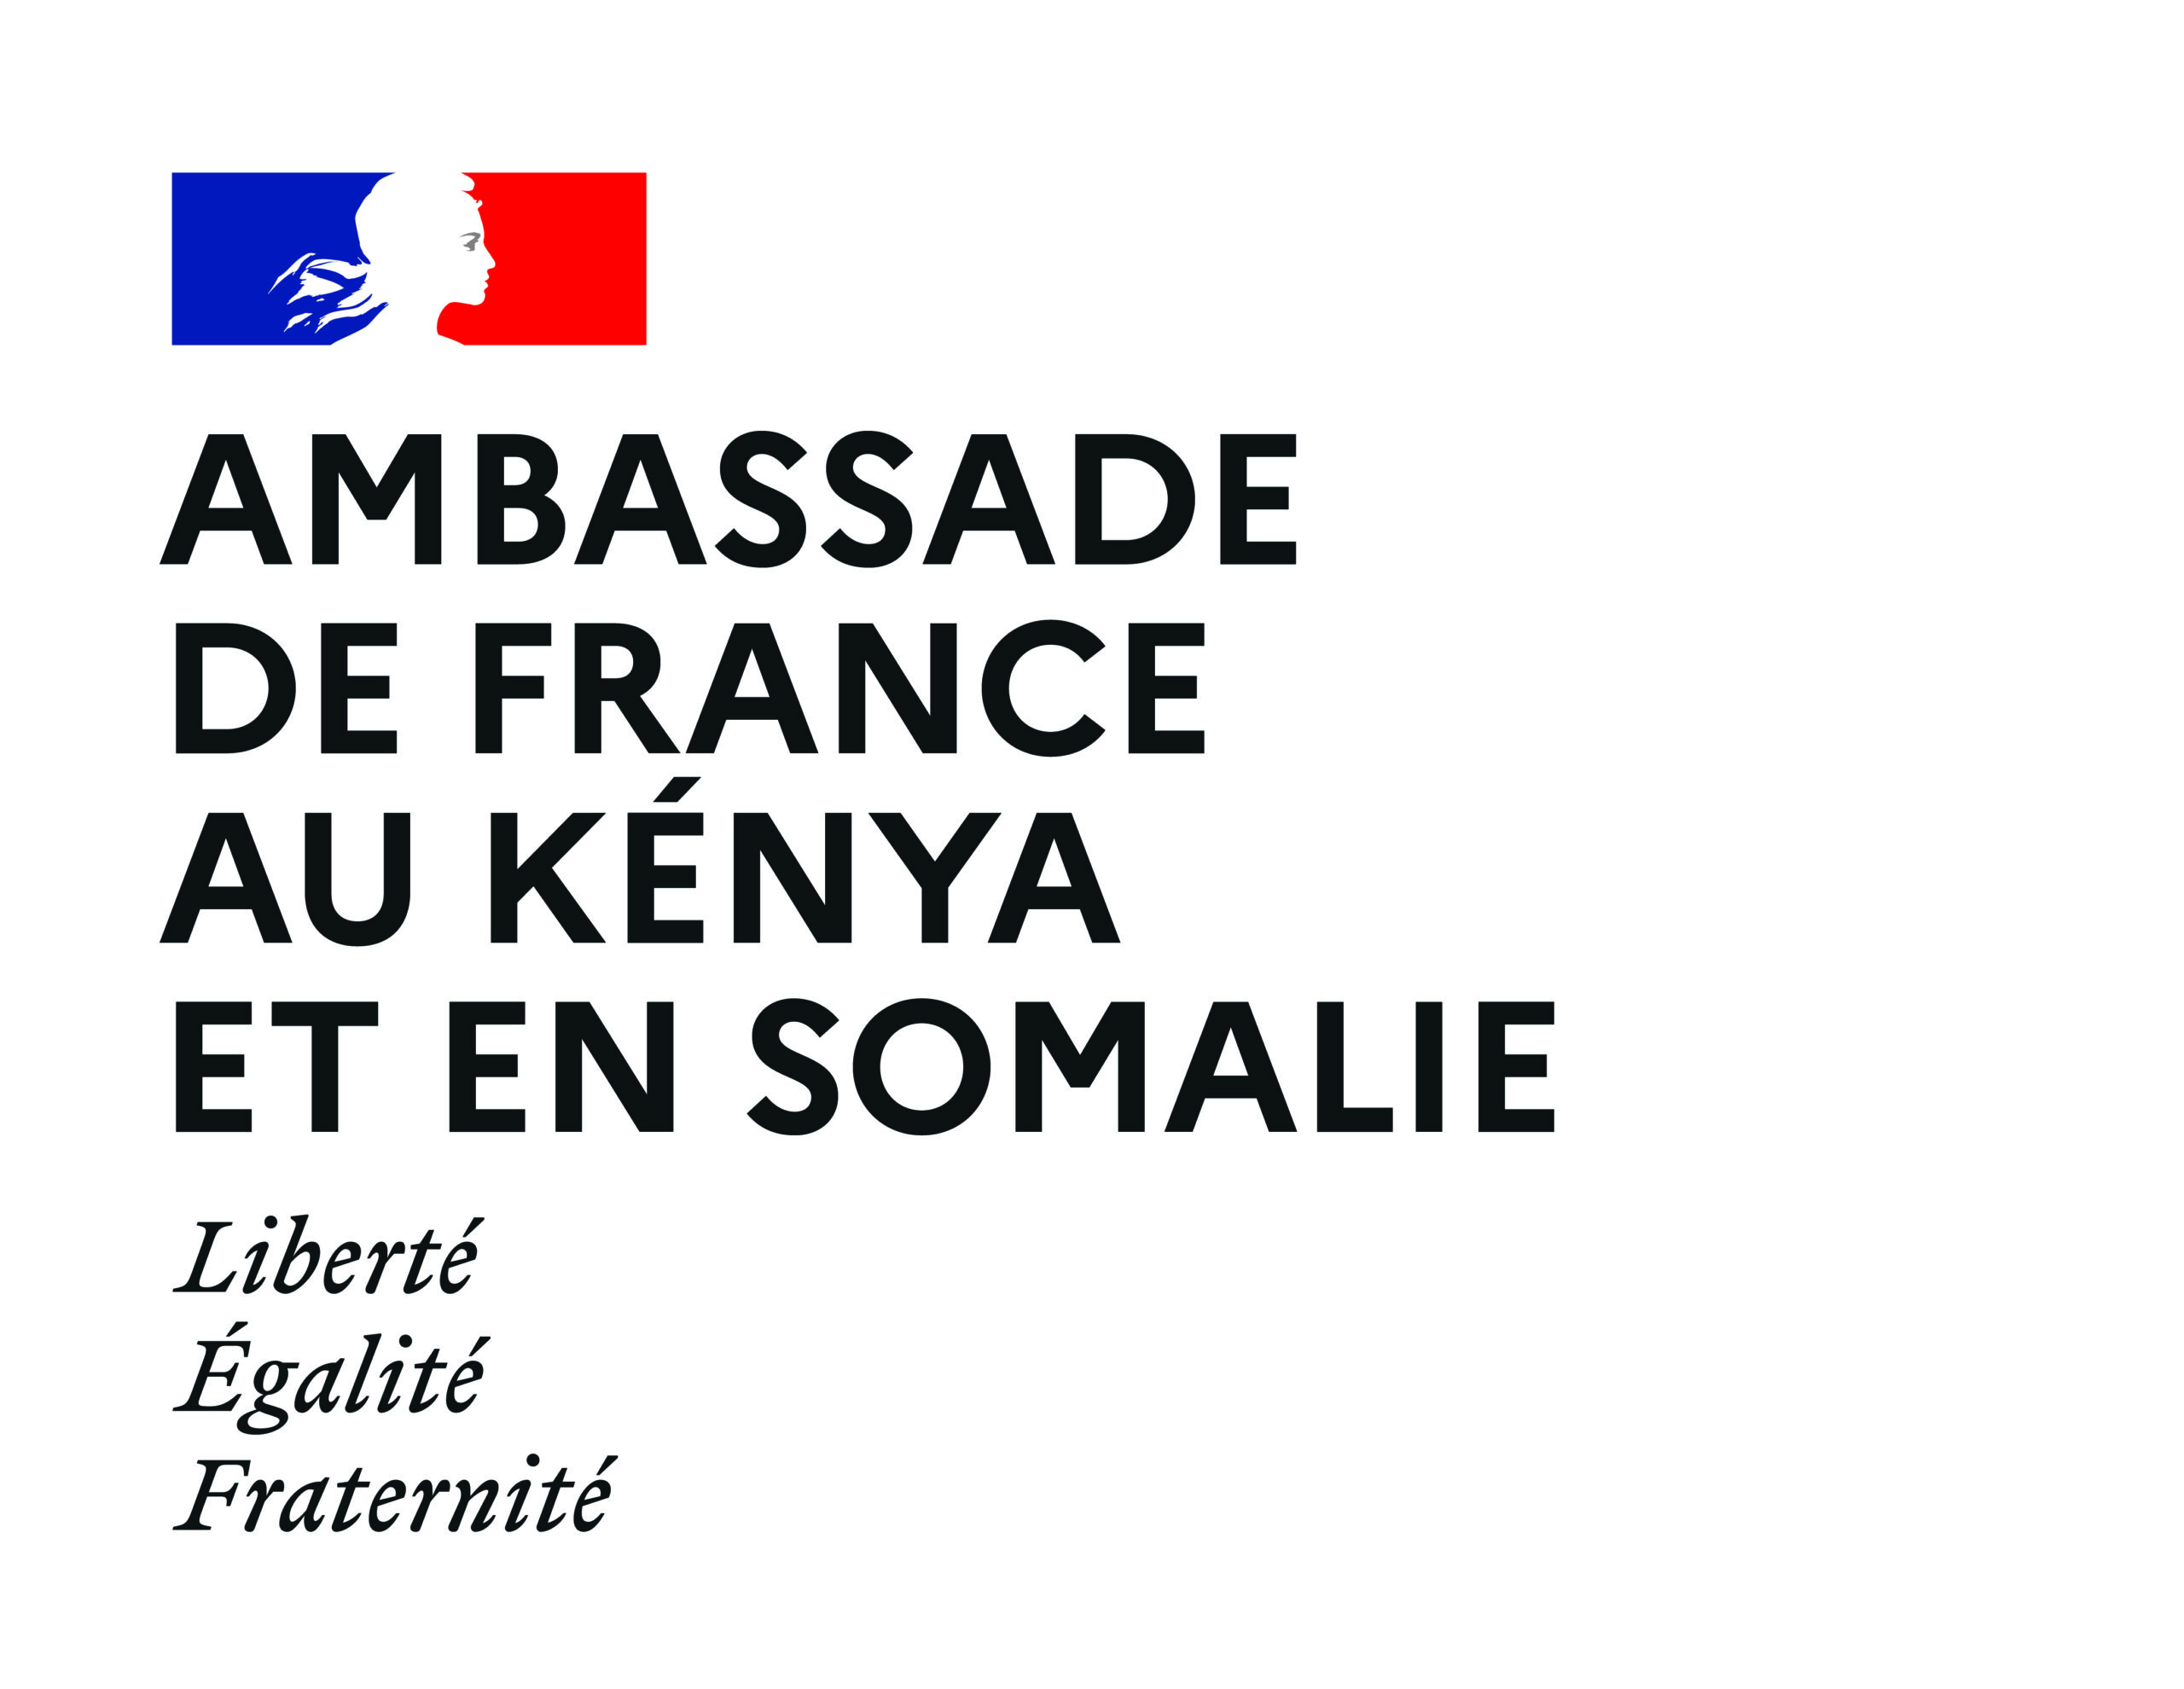 logoAmb-Kénya-Somalie